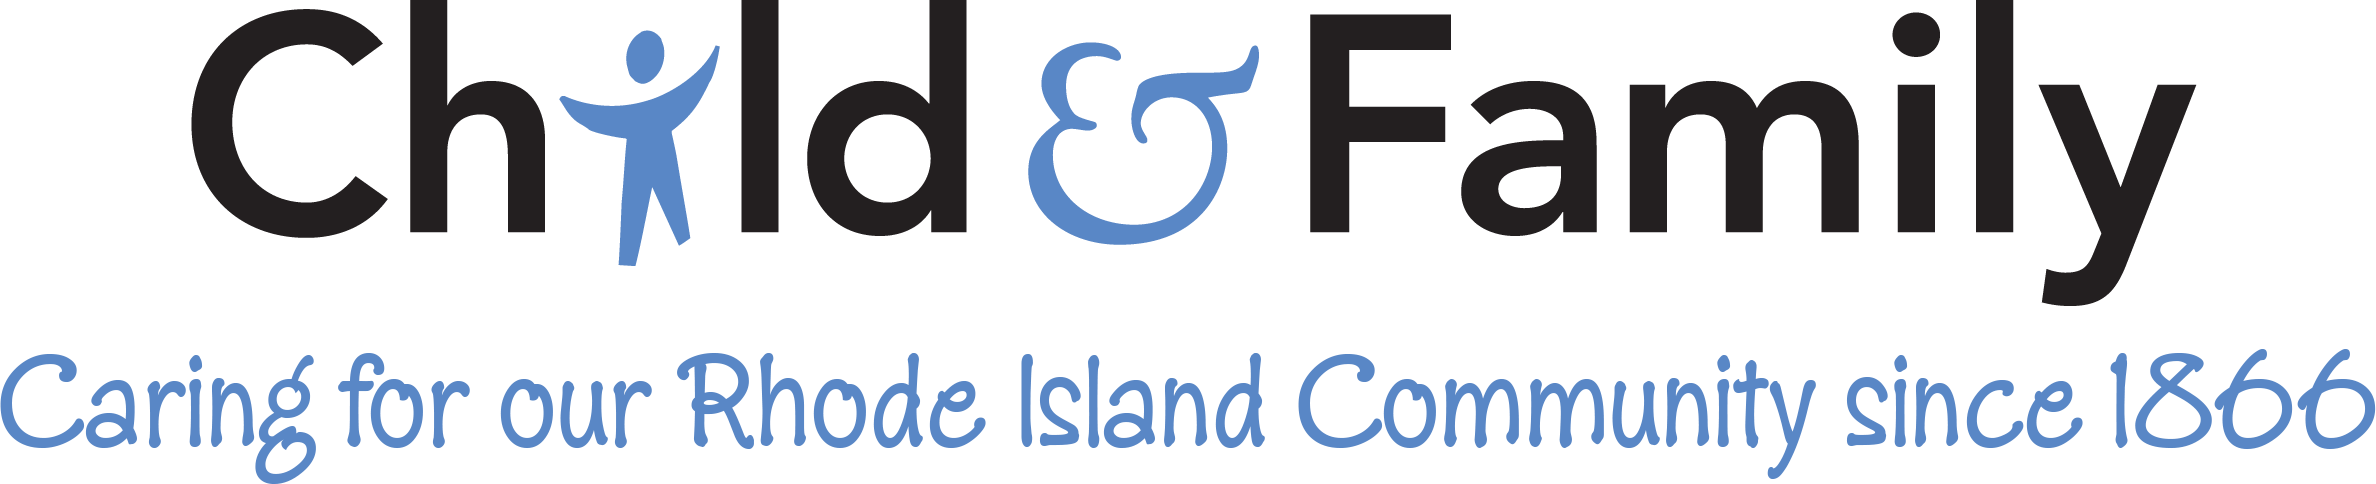 Logotipo para niños y familias